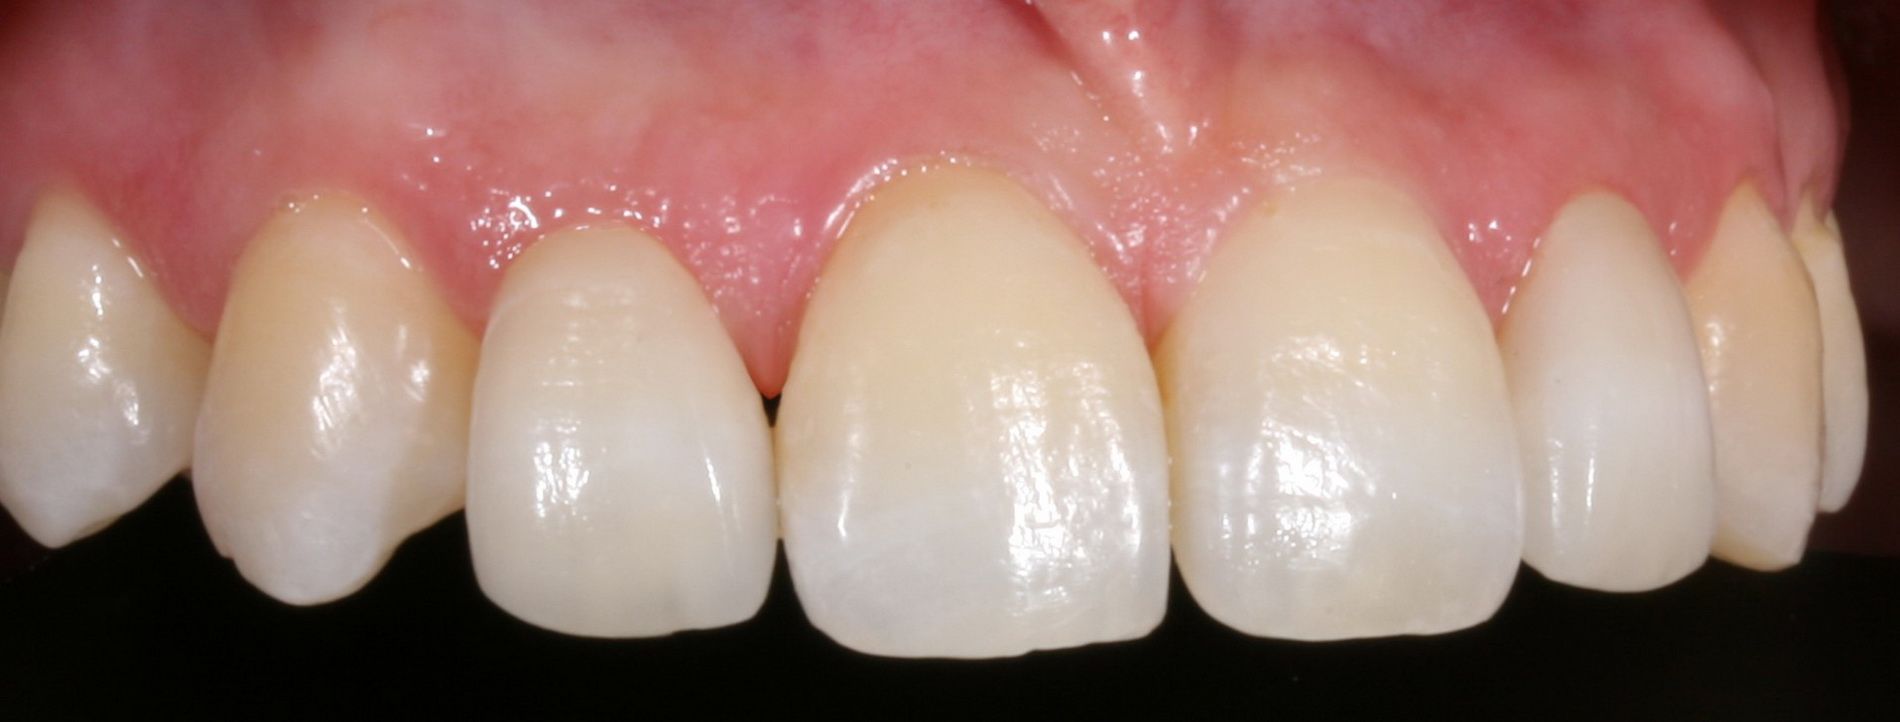 El sistema Cerec 3D de CAD-CAM dental permite confeccionar restauraciones dentales con una precisión de ajuste de 30 micras.